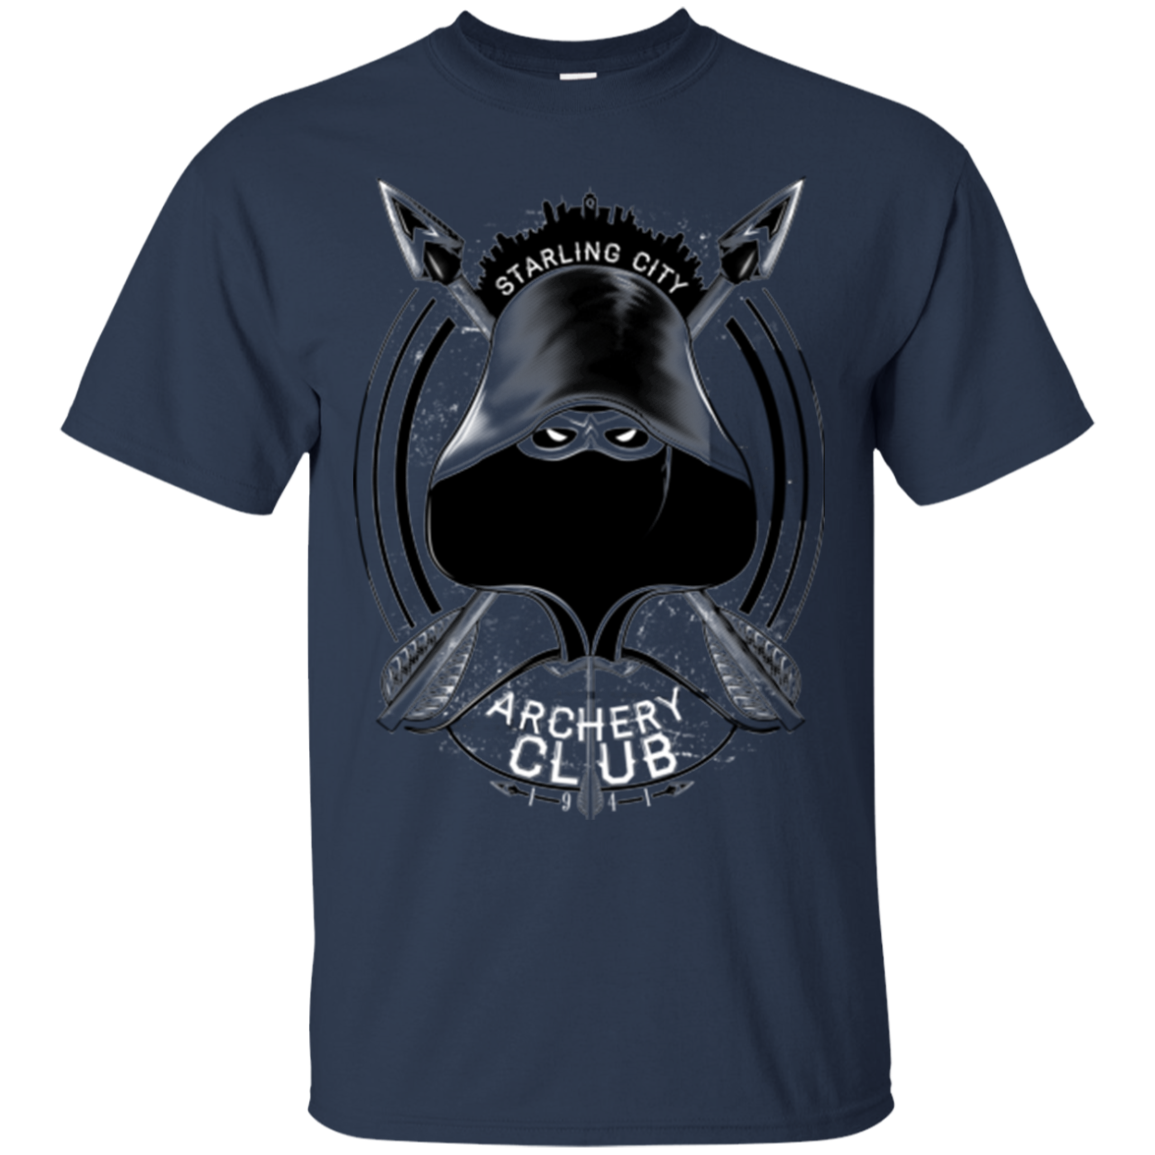 Archery Club T-Shirt